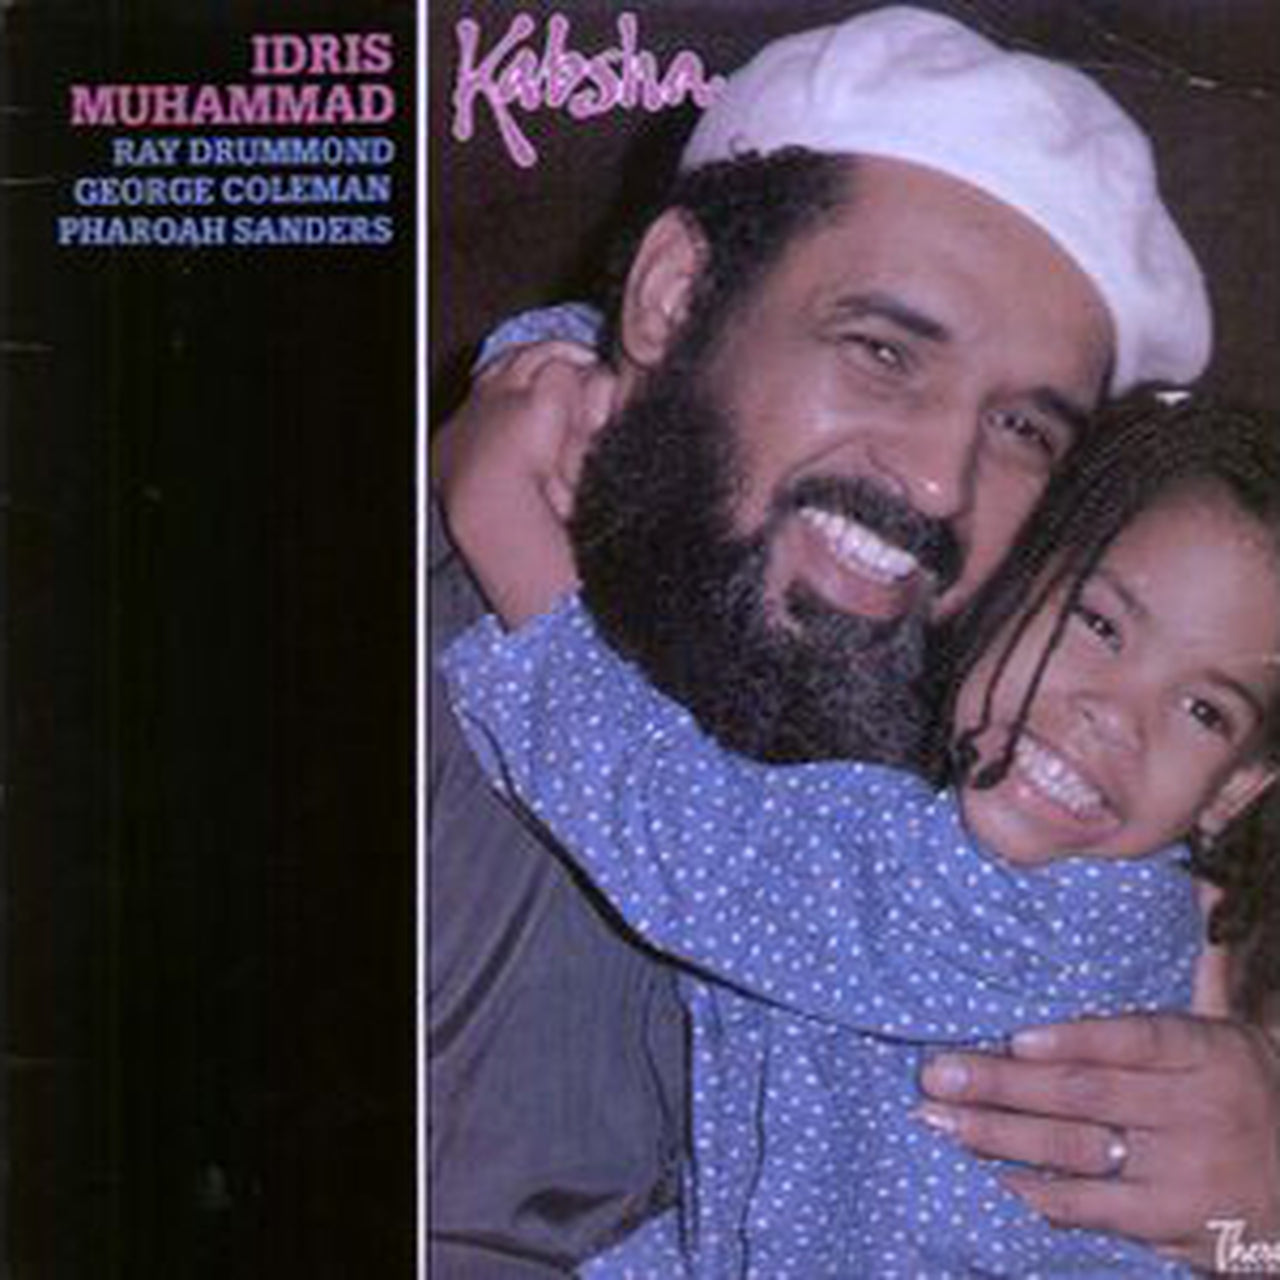 Idris Muhammad – Kabsha – Pure Pleasure LP